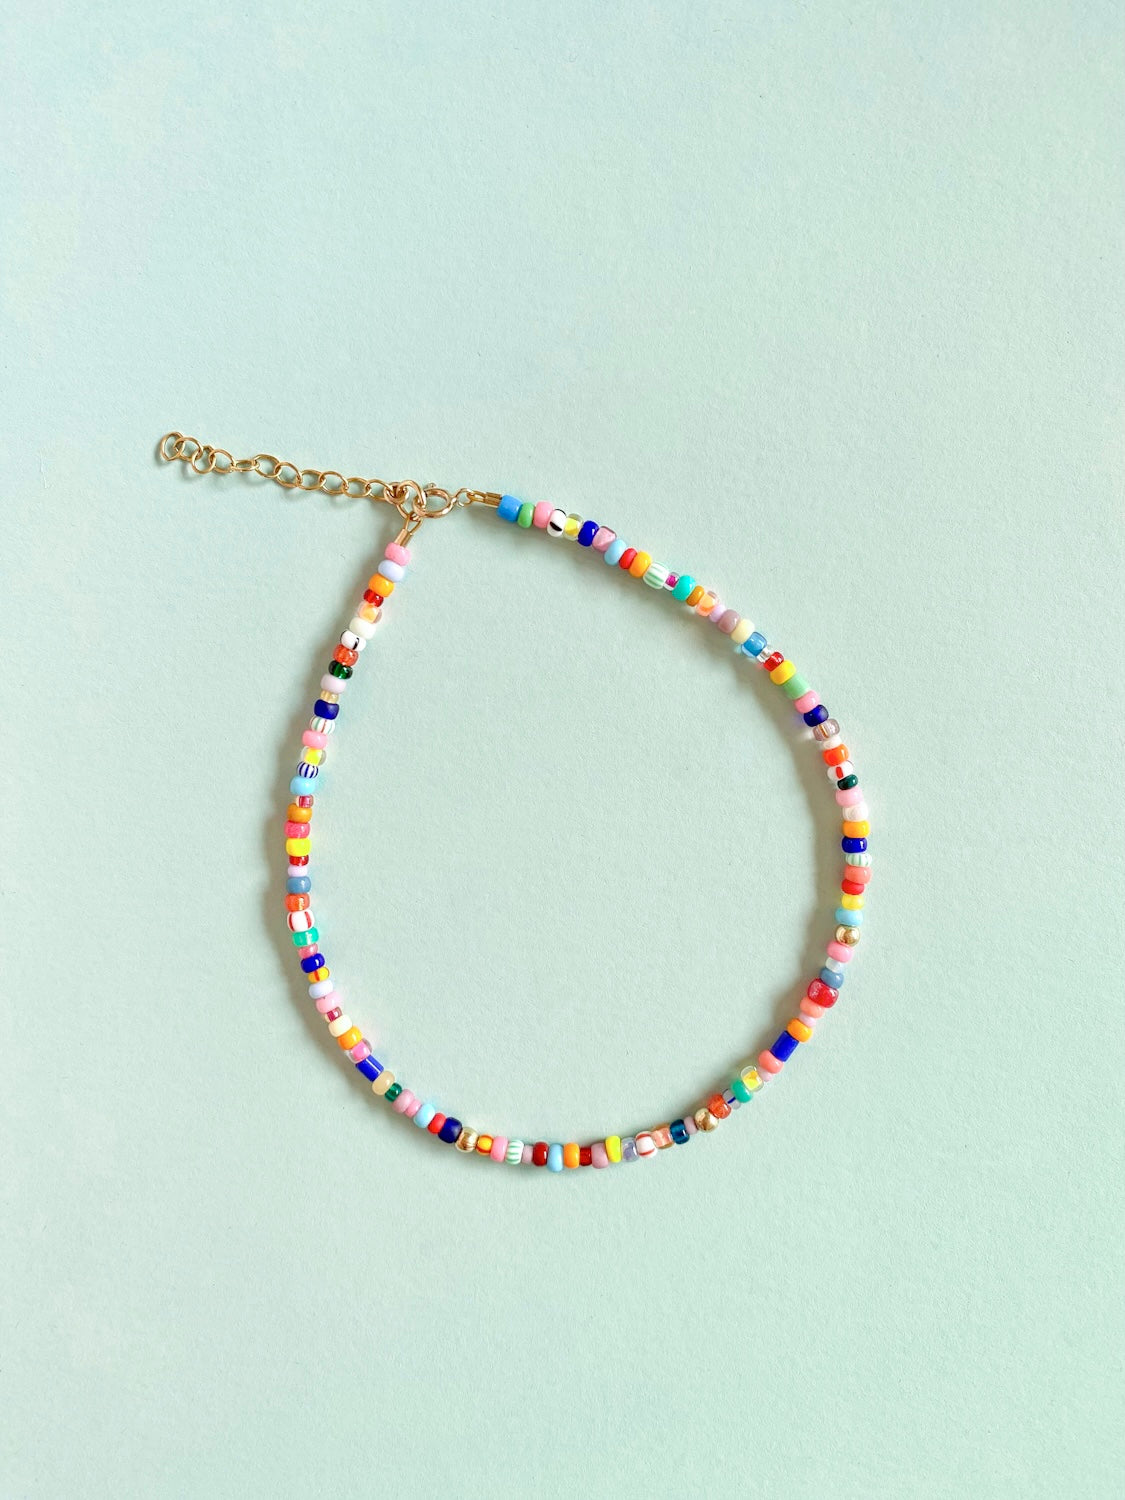 MONDO - Bracelet made of colored glass beads